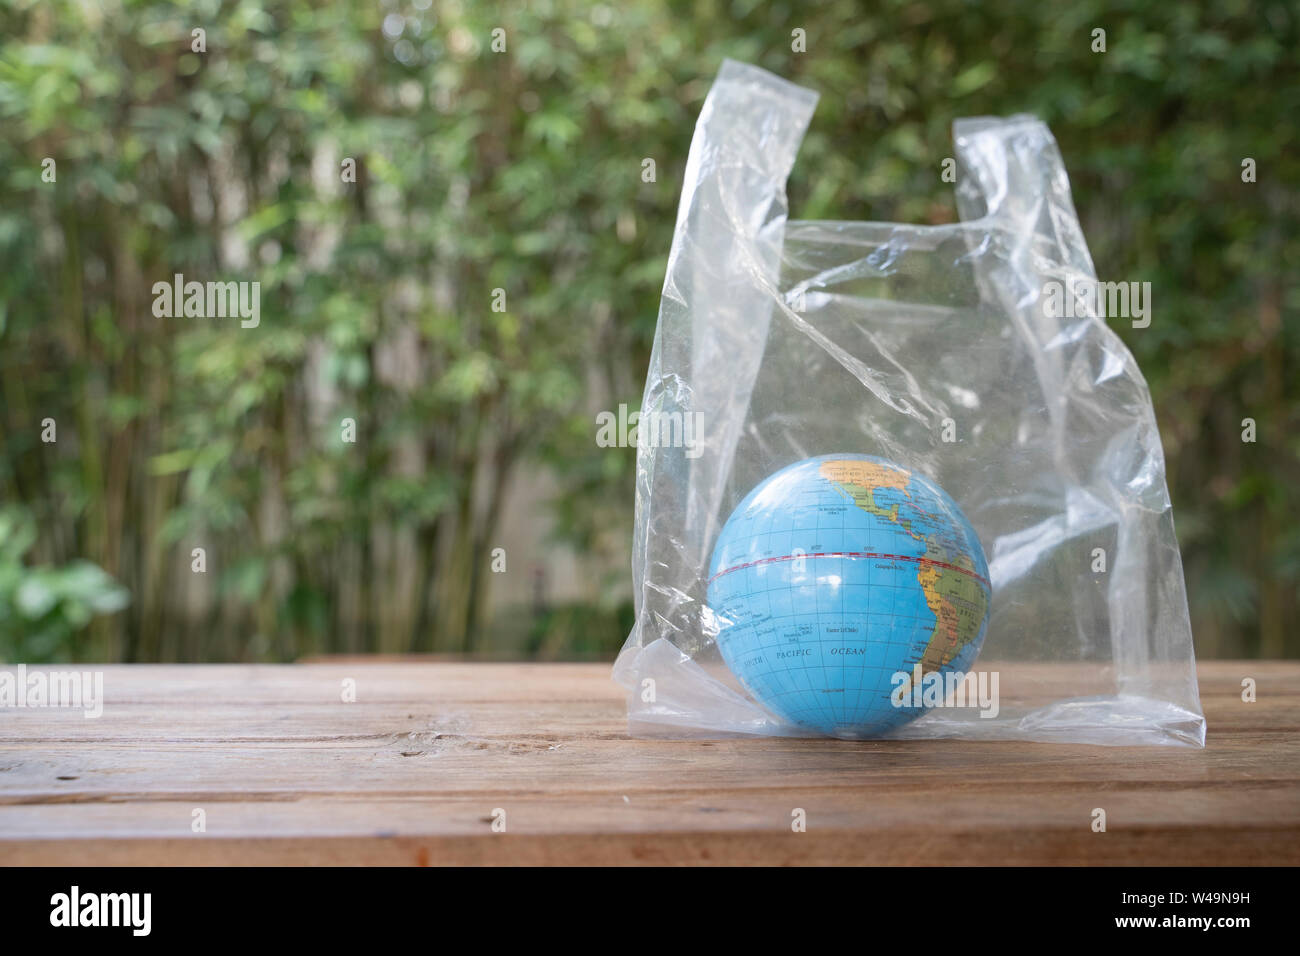 Globe in plastic bag. Stock Photo